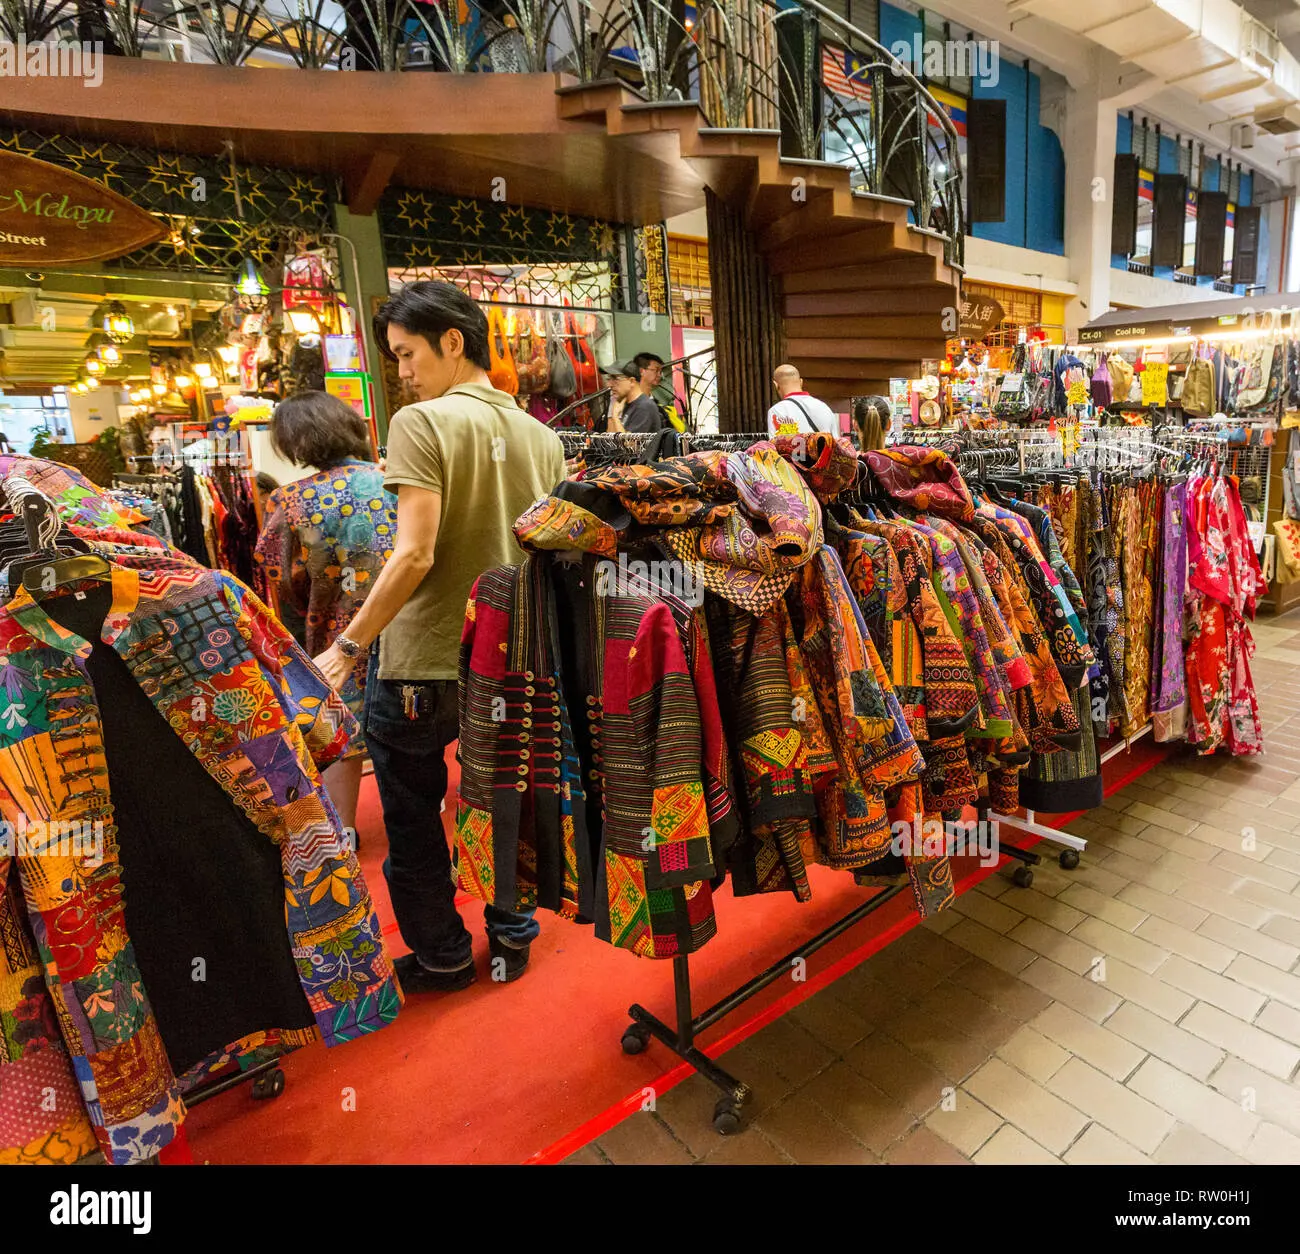 mercado central ropa - Que se comercializa en el Mercado Central de Buenos Aires